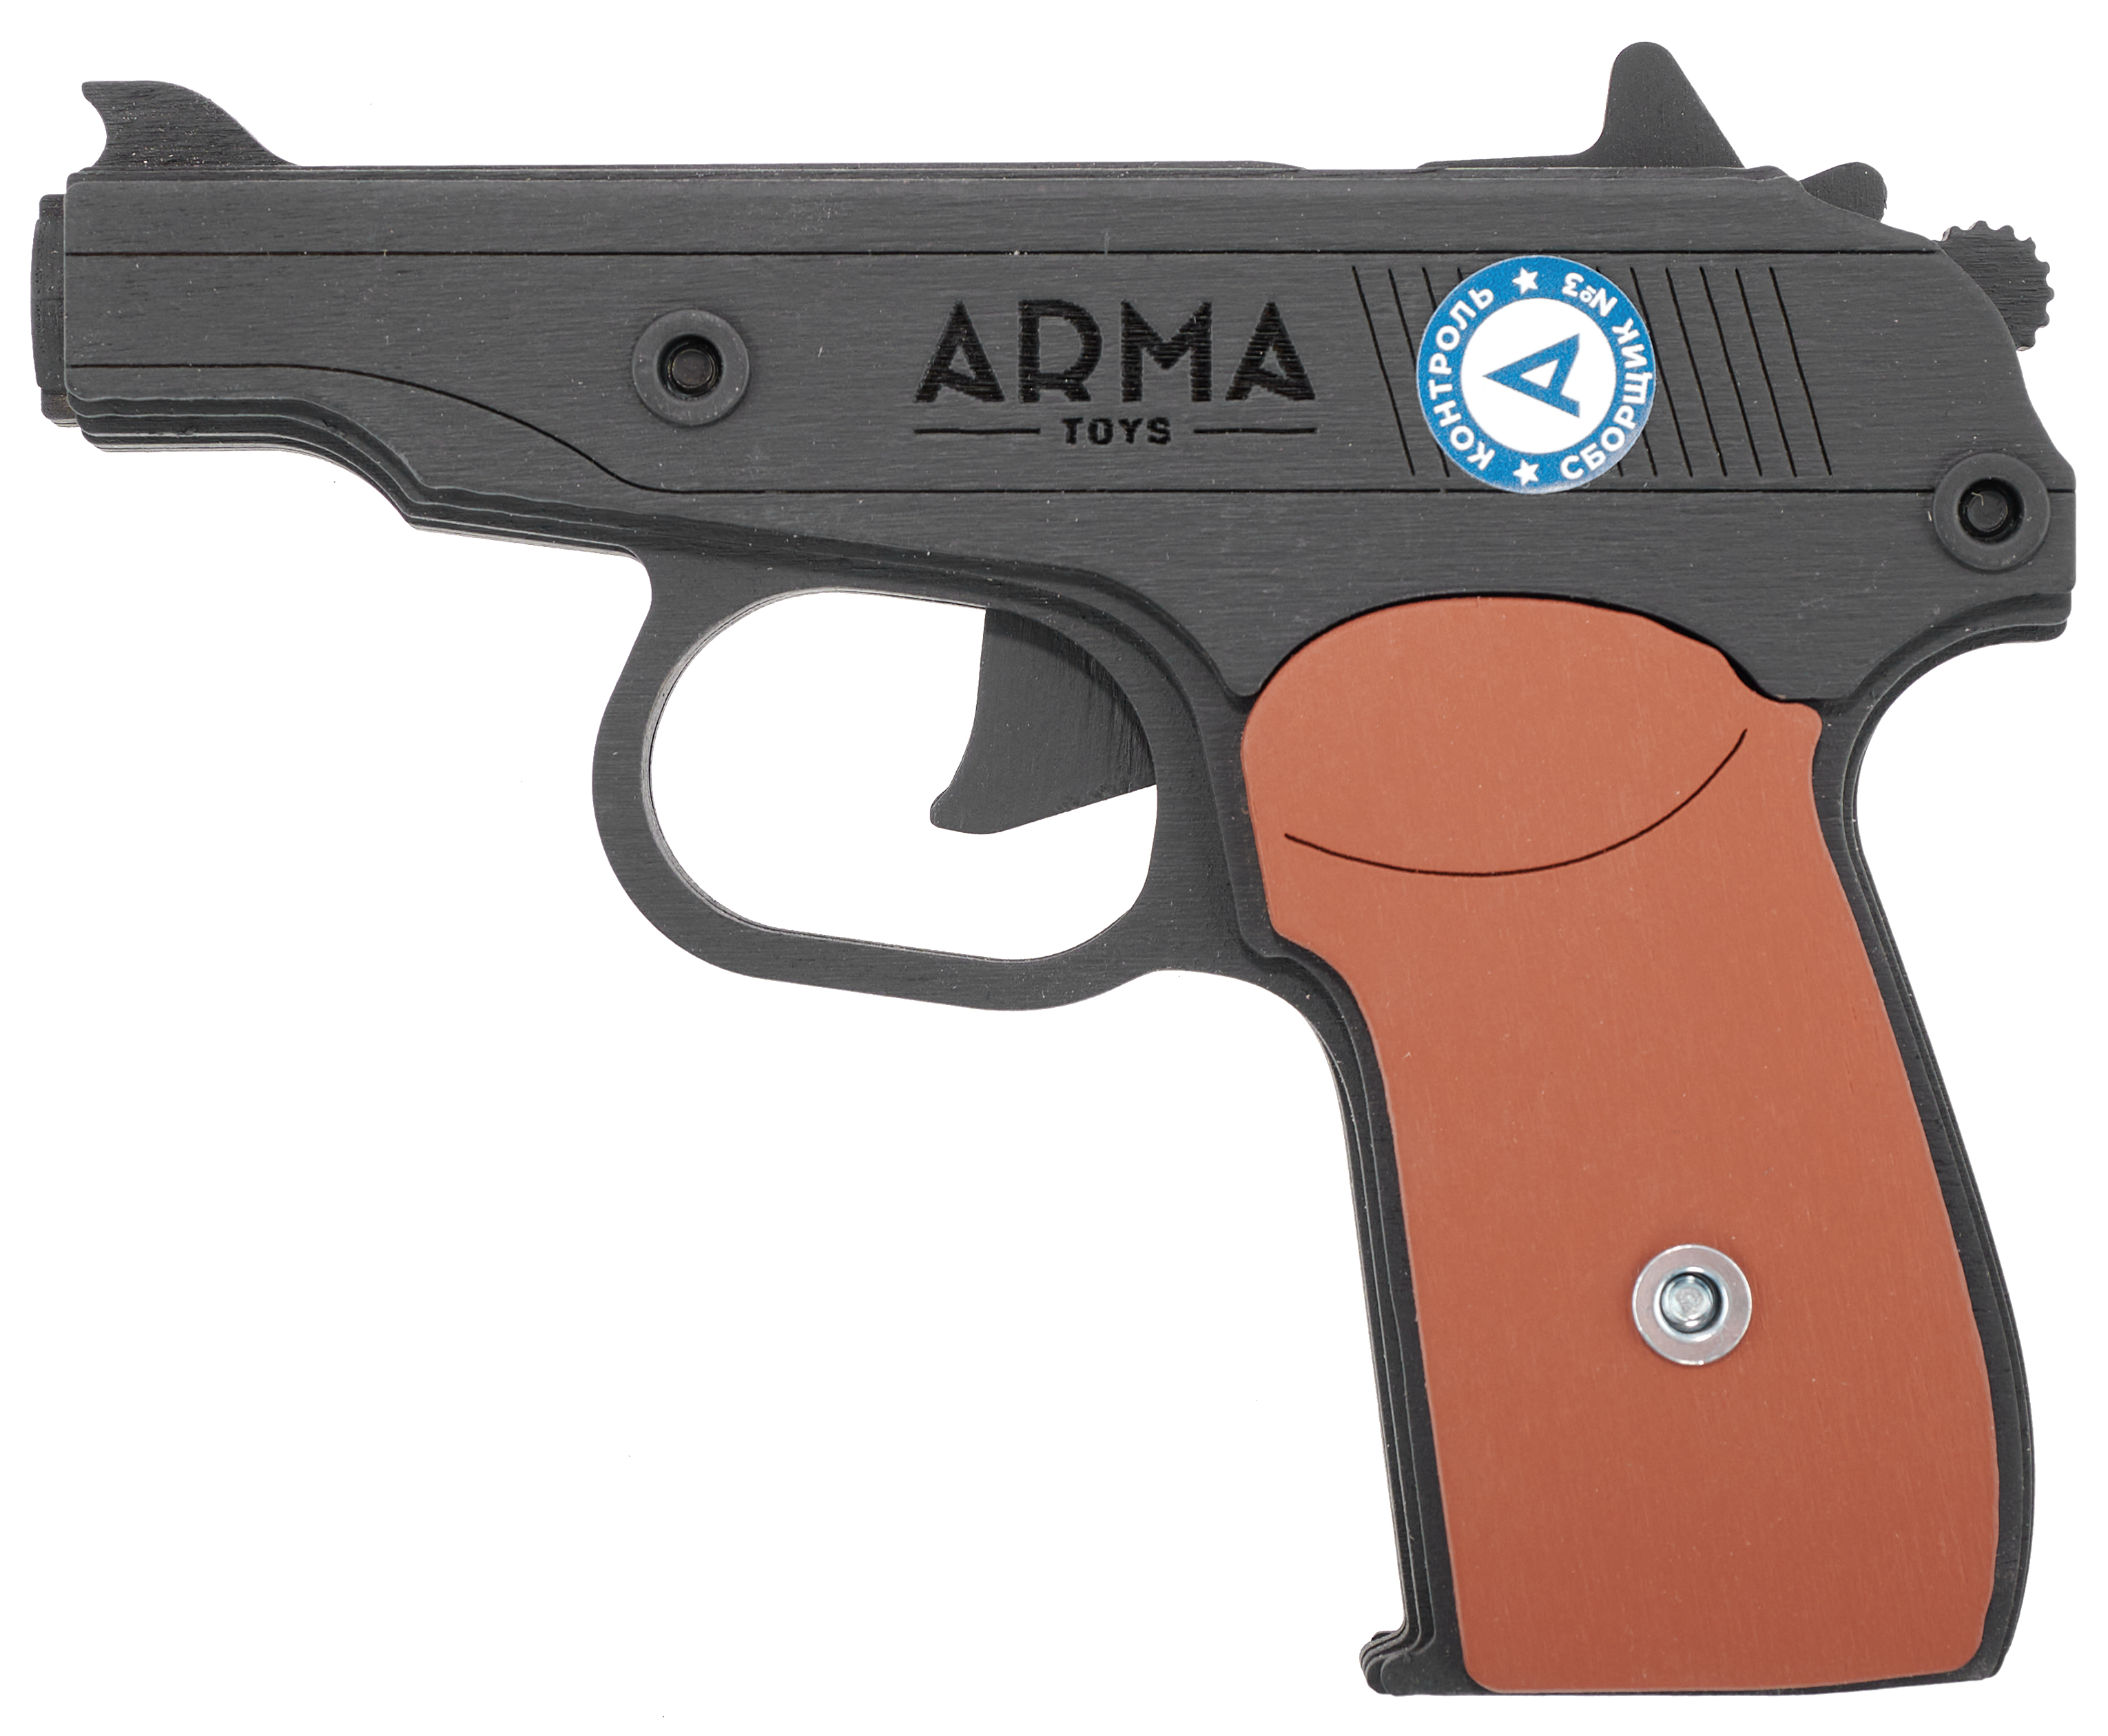 Резинкострел игрушечный Arma toys пистолет Макарова макет, ПМ, окрашенный, AT012K